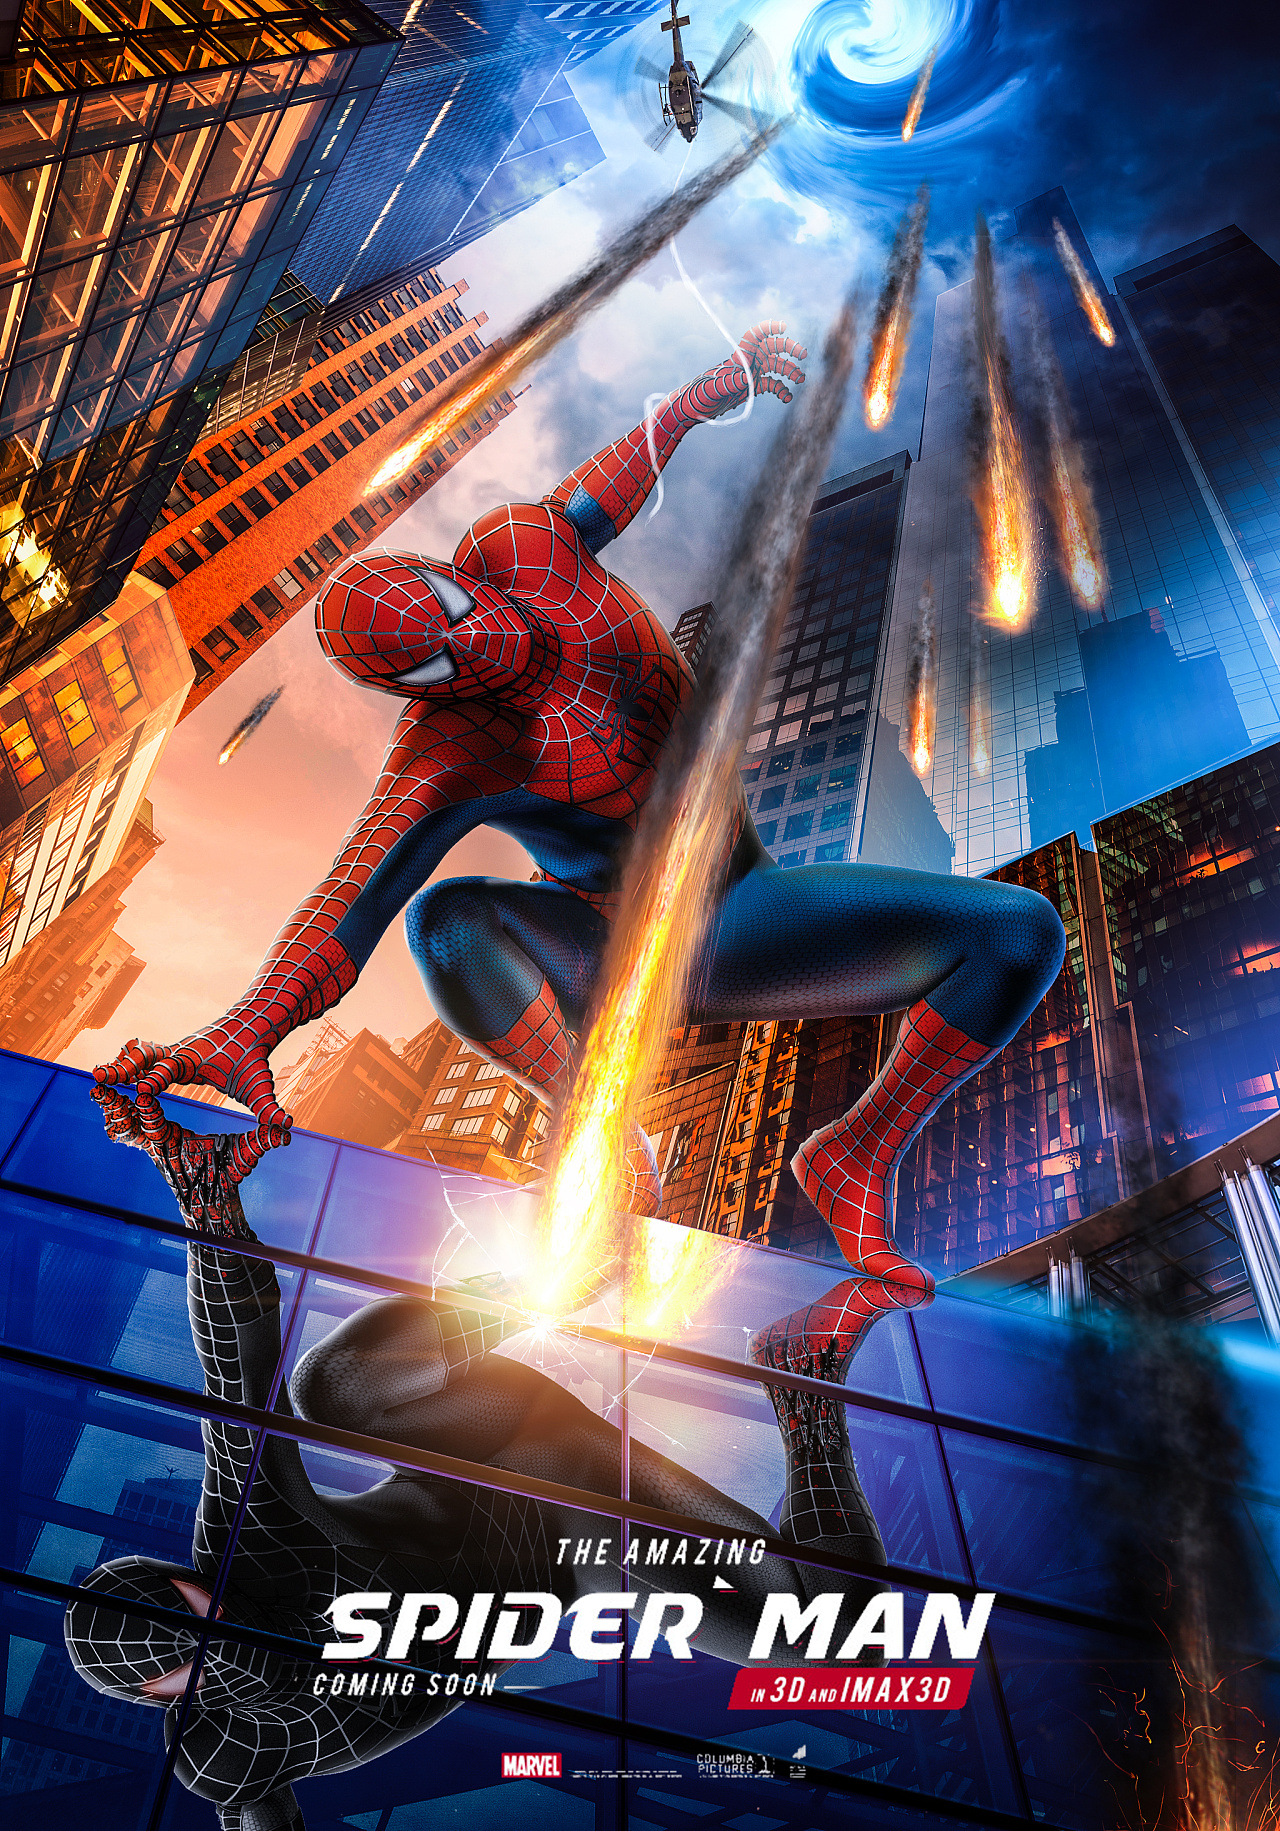 神奇蜘蛛侠 - The Amazing Spider-Man | indienova GameDB 游戏库